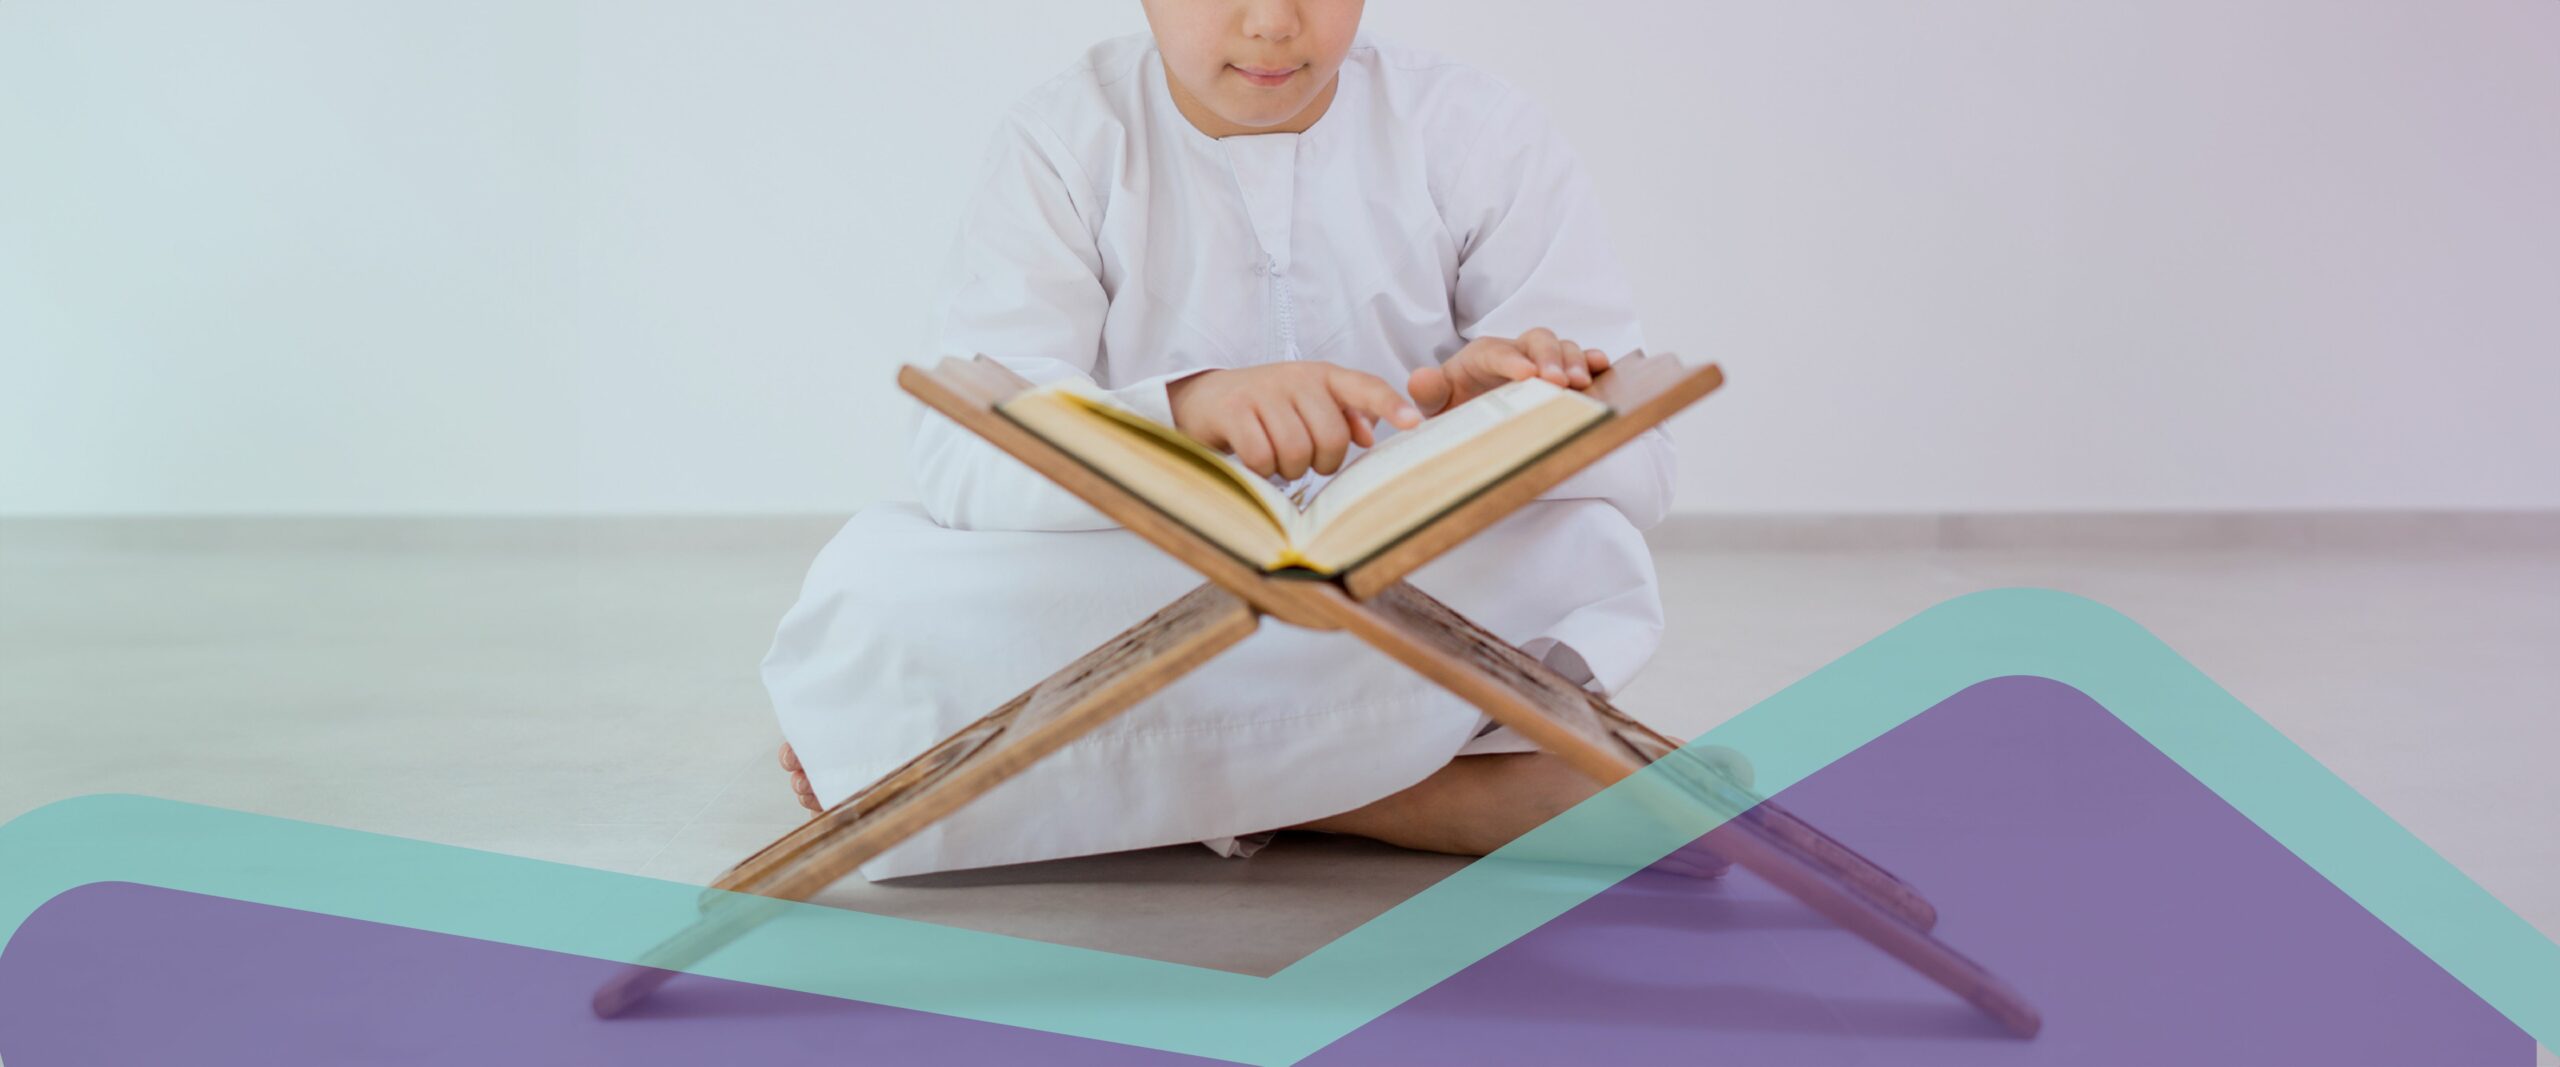 دور الأسرة في تحفيظ القرآن الكريم للأطفال وتأسيس الطفل مع مدكر الطفولة